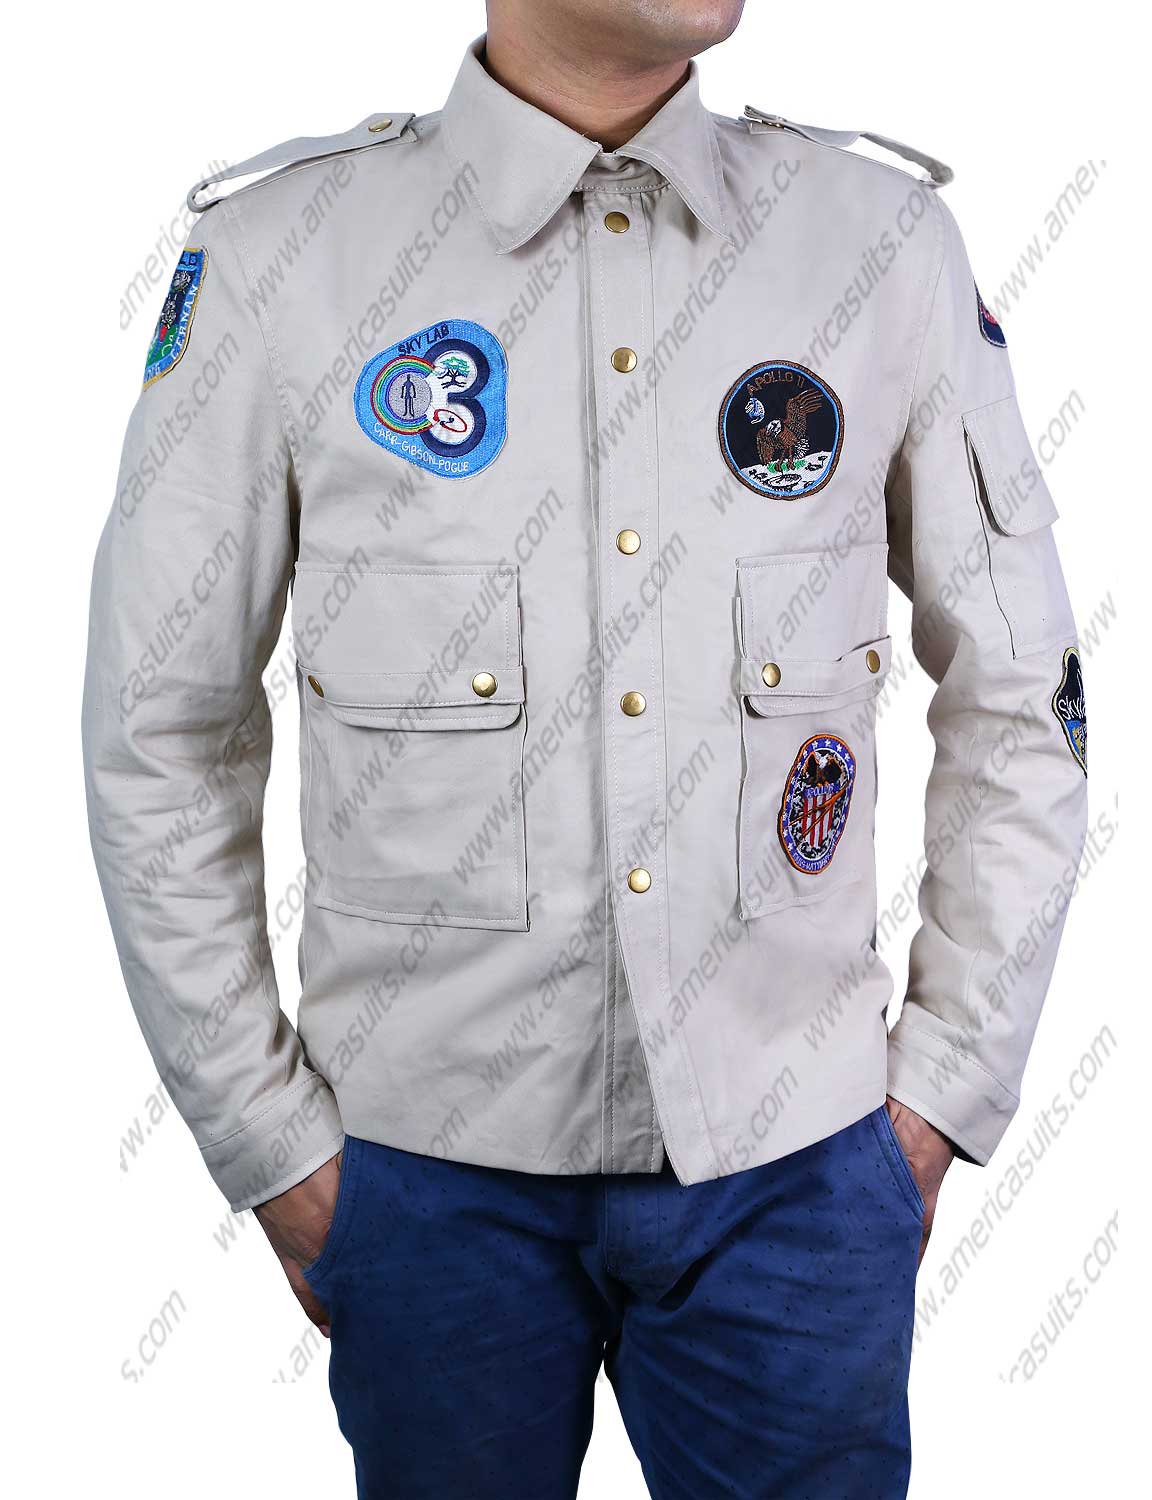 1979-steve-austin-six-million-dollarman-jacket